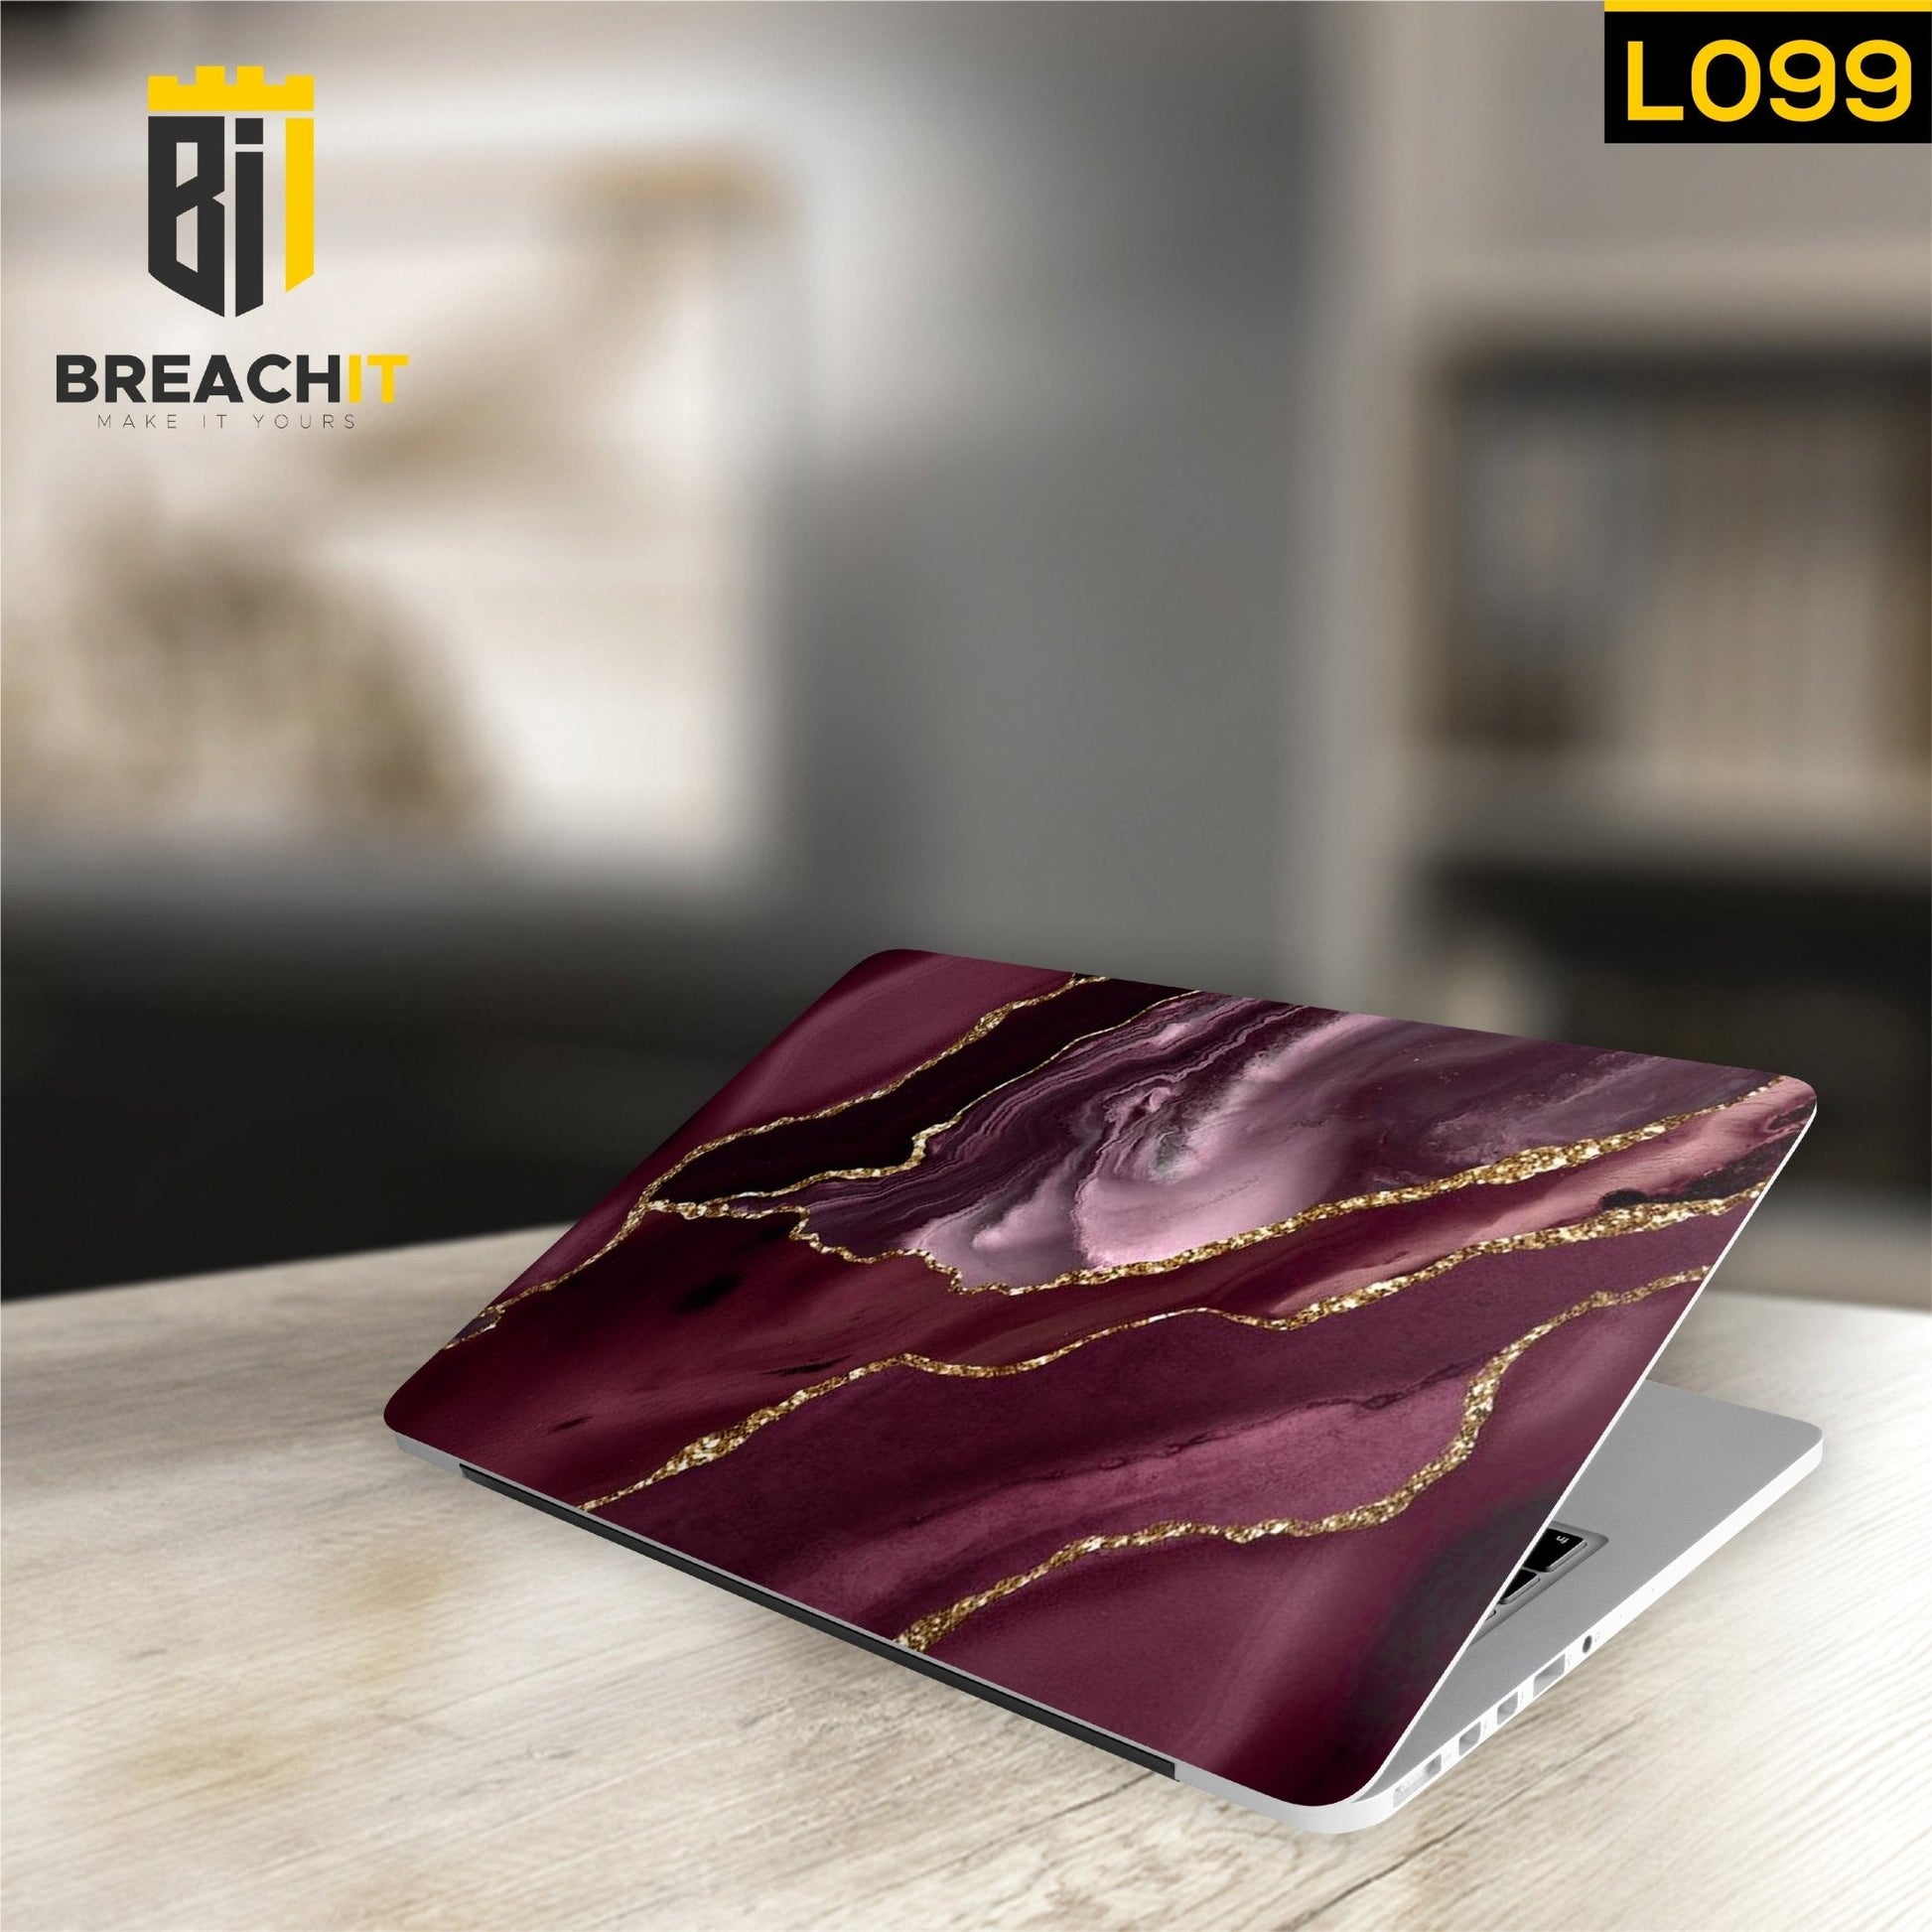 L099 Maroon Marble Laptop Skin - BREACHIT